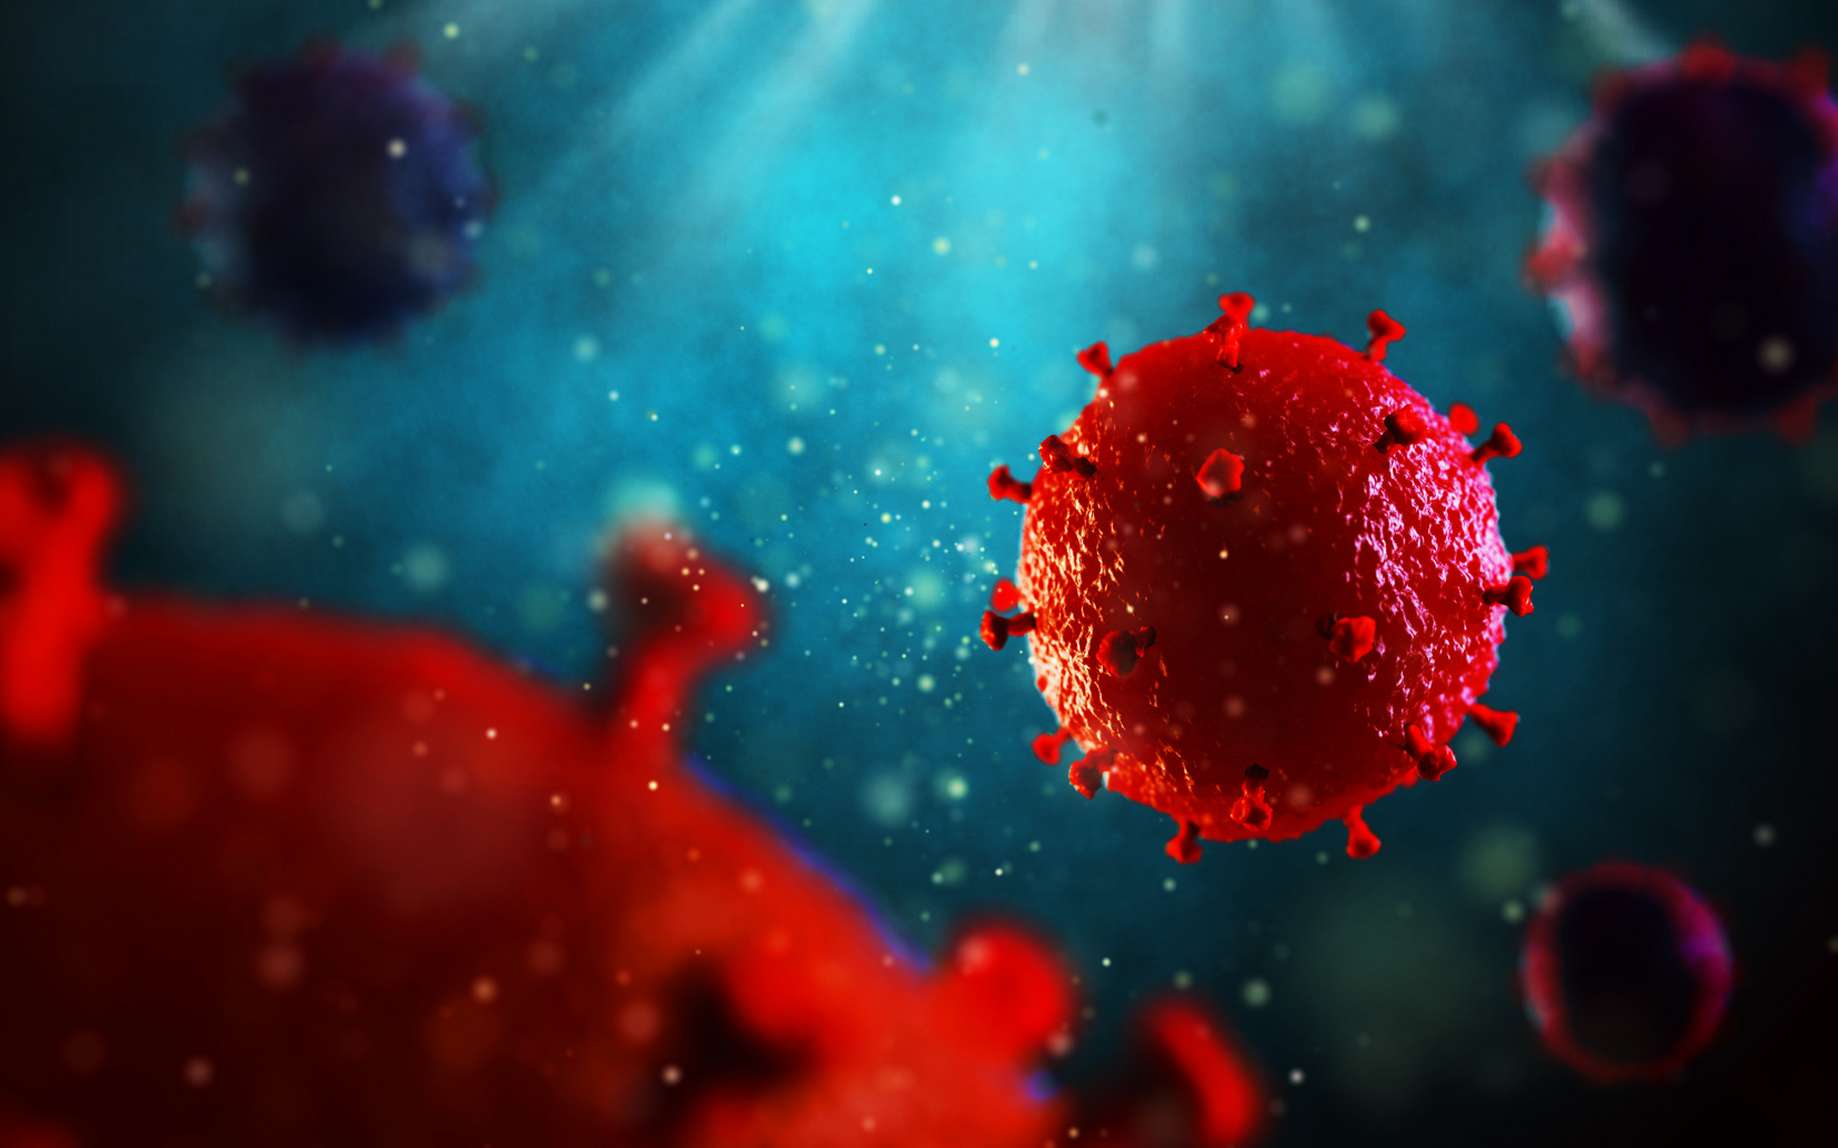 Sida : une seconde mutation génétique résistante au VIH découverte